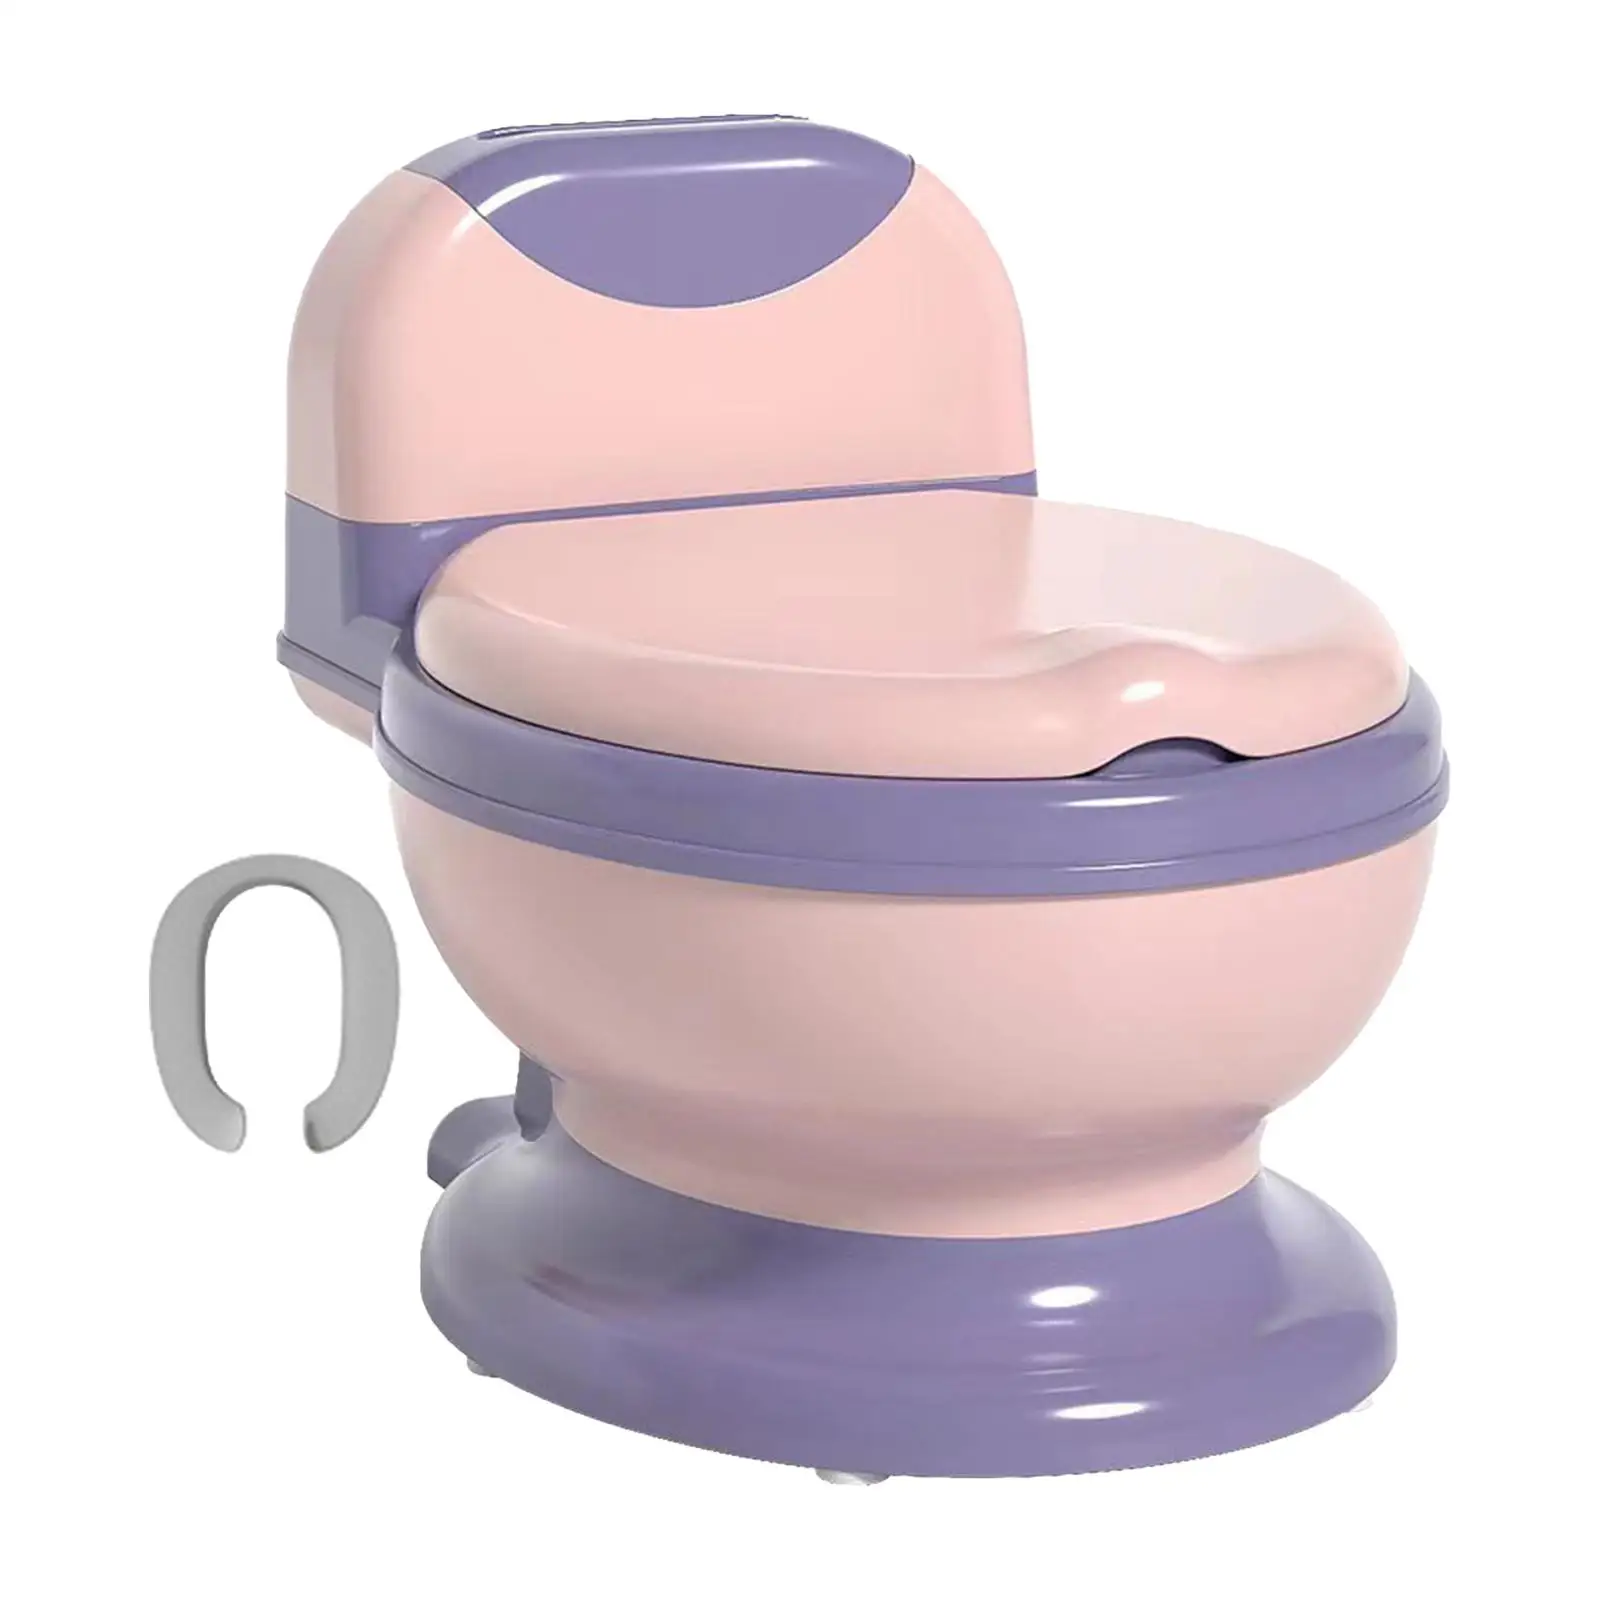 Potty Train Toilet Removable Potty Pot Portable Toilet Training Seat Potty Seat Toddlers Potty Chair for Baby Boys Girls Kids